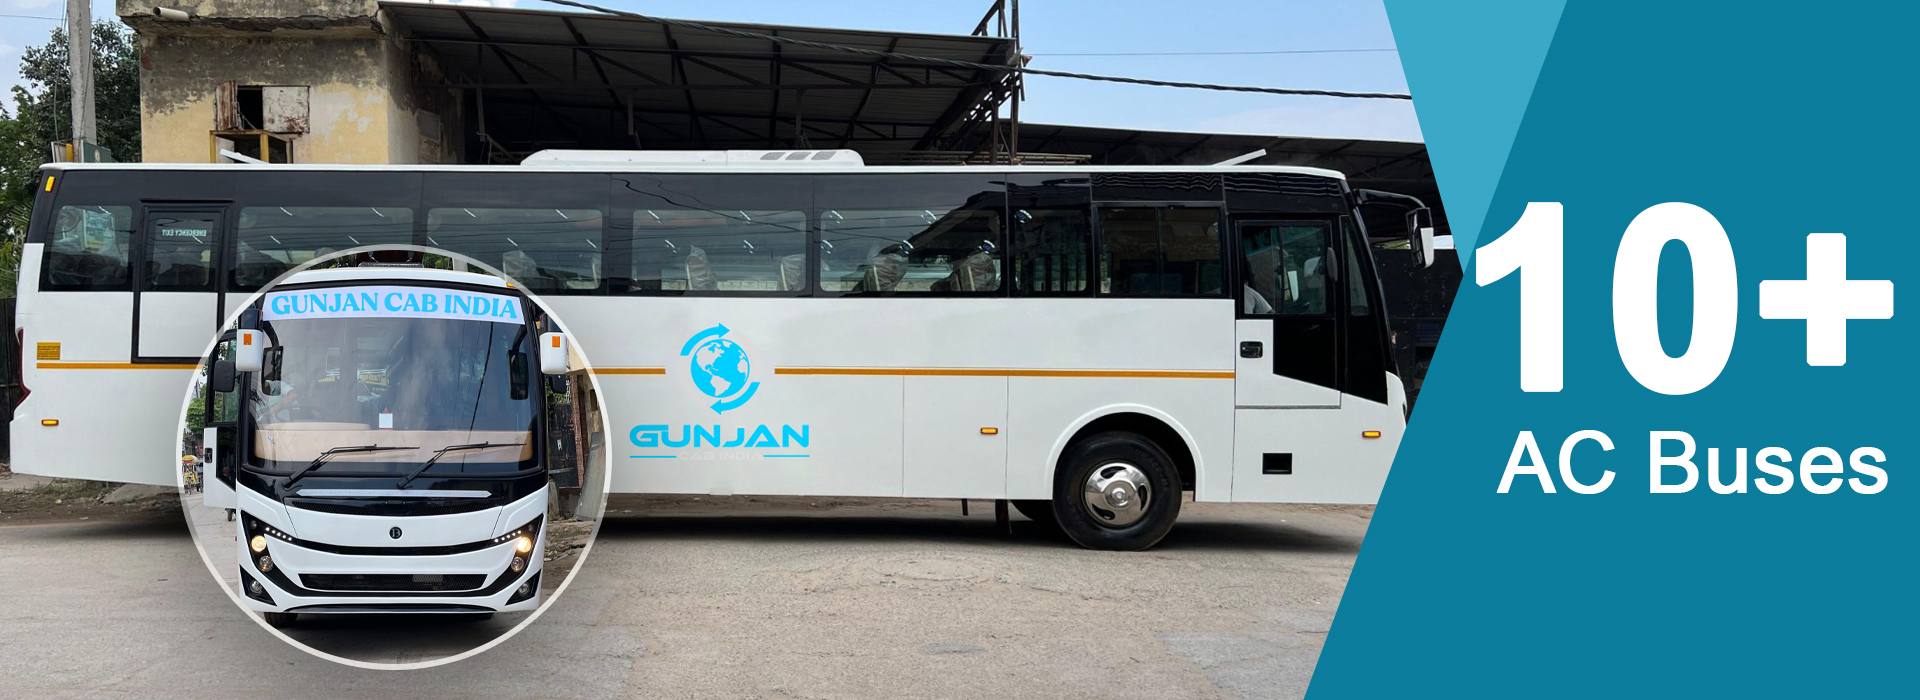 gunjan-cab-banner